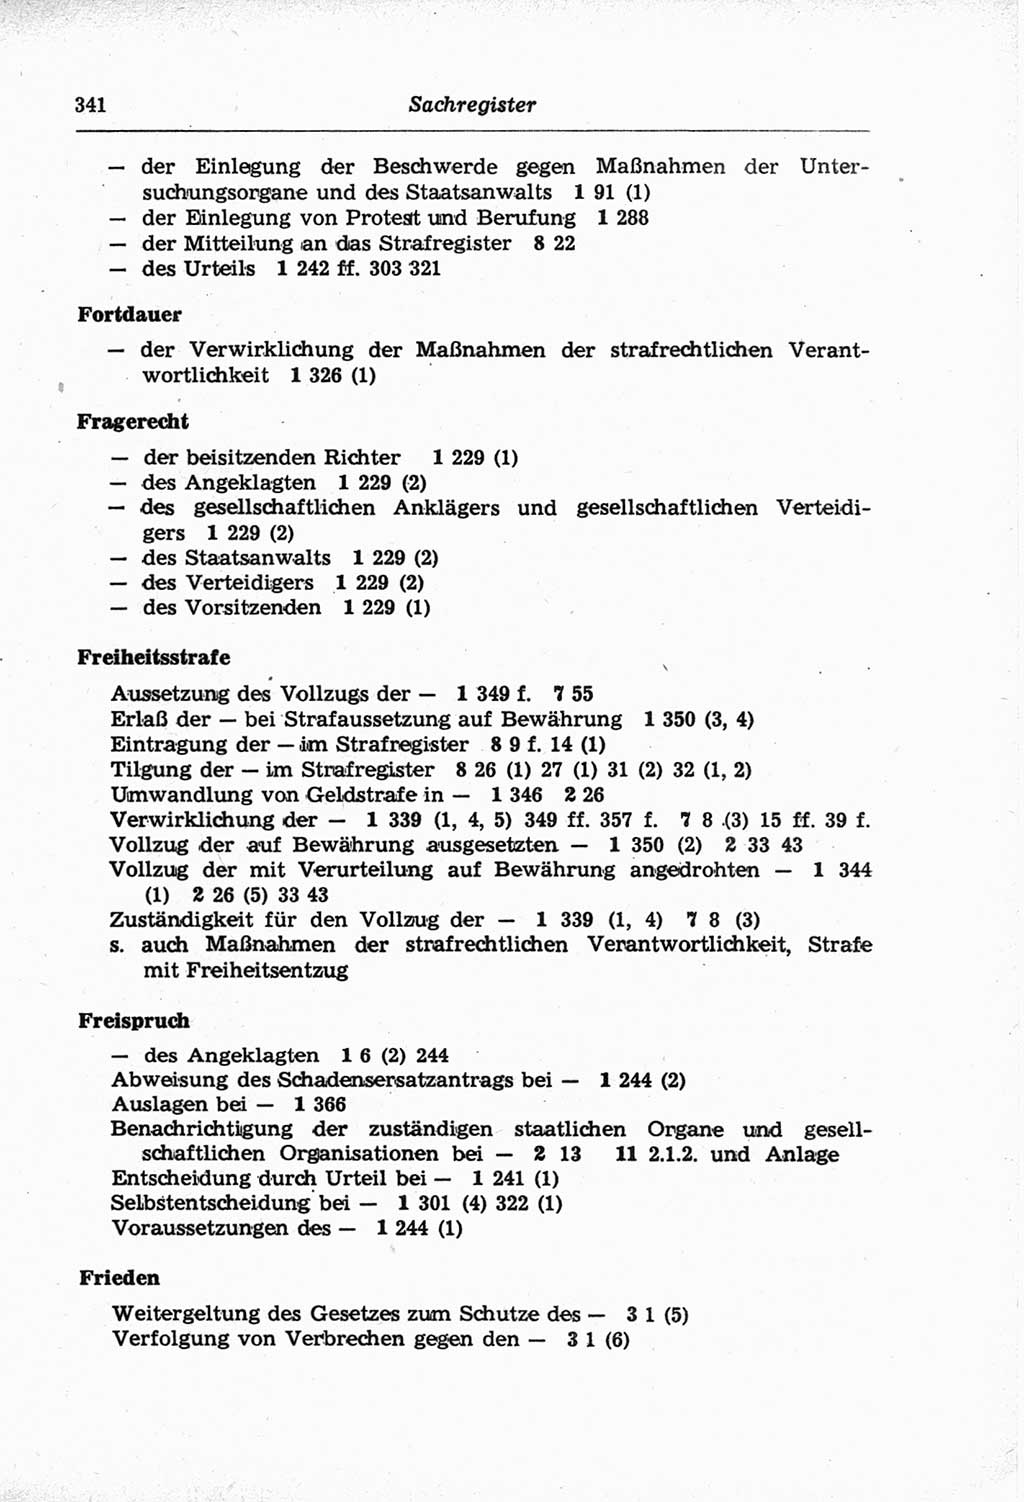 Strafprozeßordnung (StPO) der Deutschen Demokratischen Republik (DDR) und angrenzende Gesetze und Bestimmungen 1968, Seite 341 (StPO Ges. Bstgn. DDR 1968, S. 341)